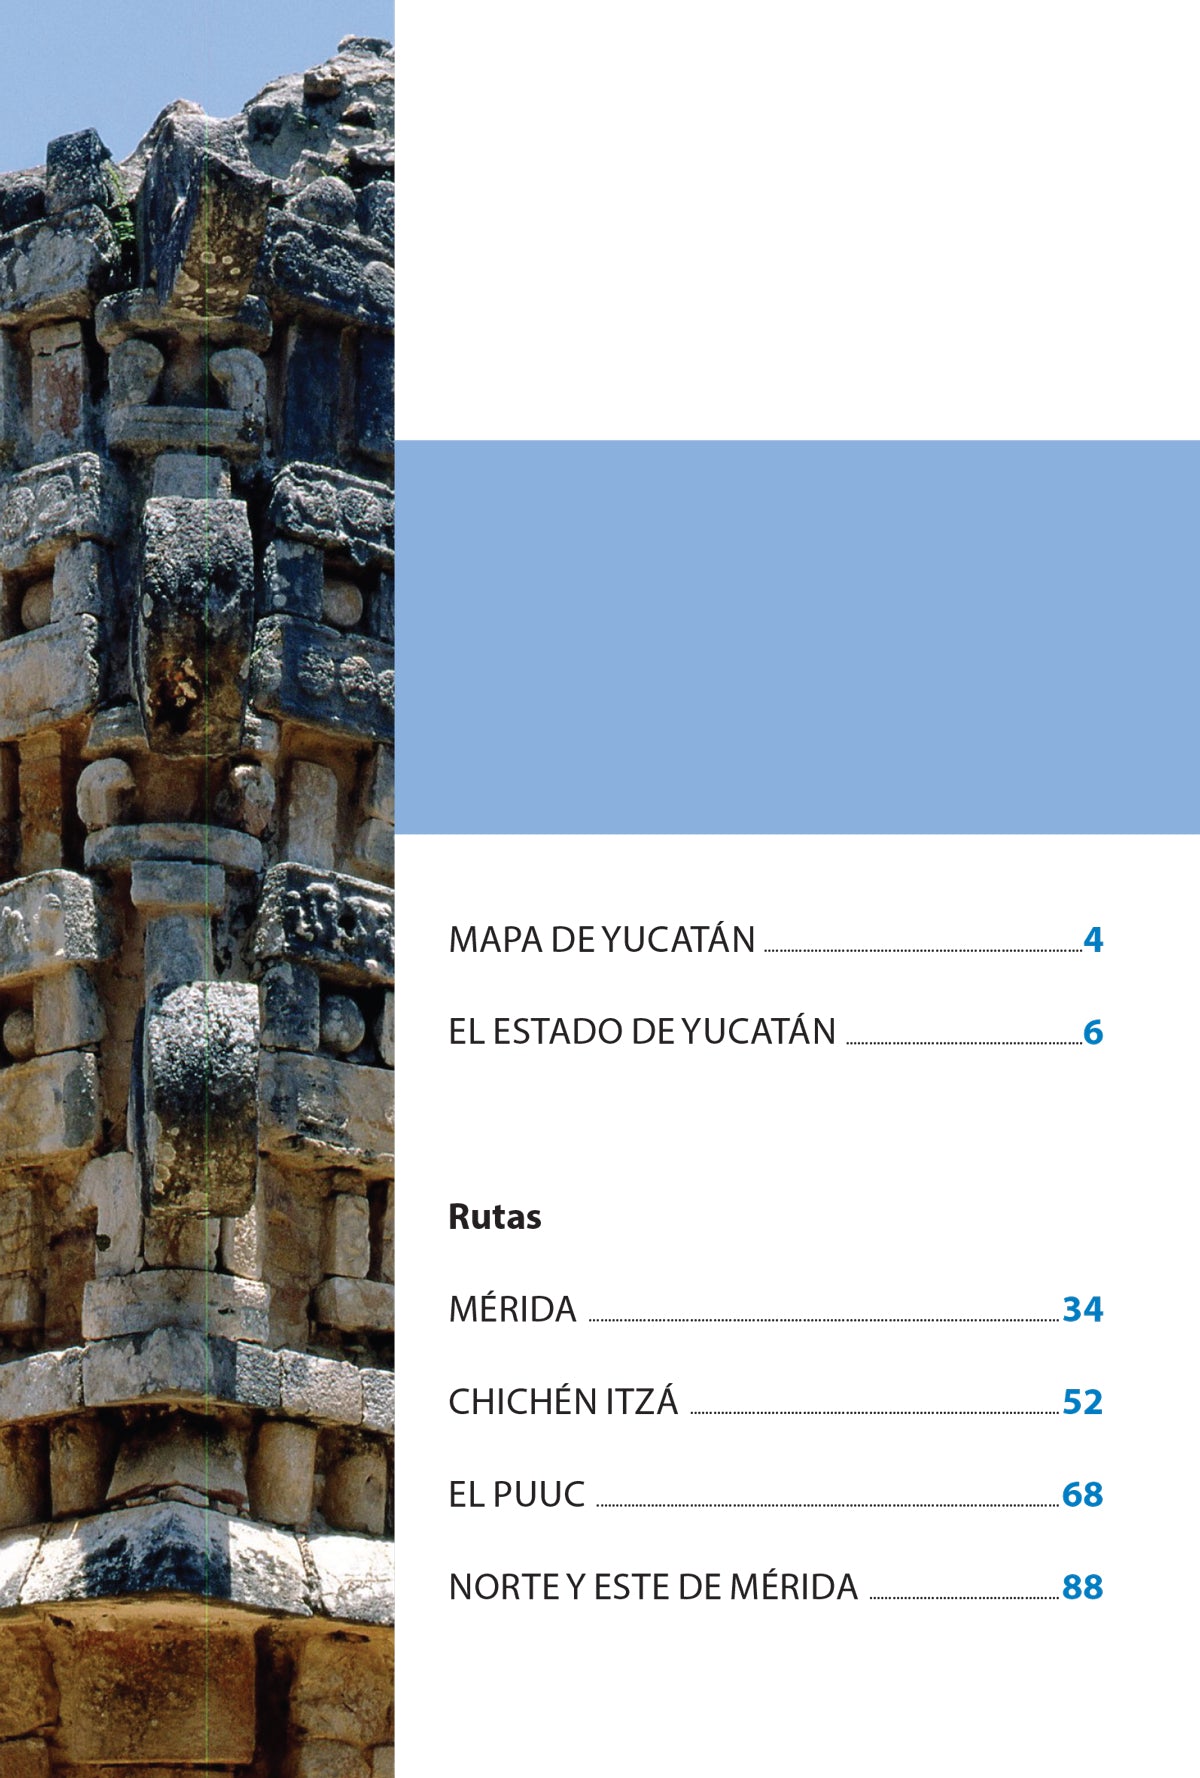 Yucatán - Guía del estado